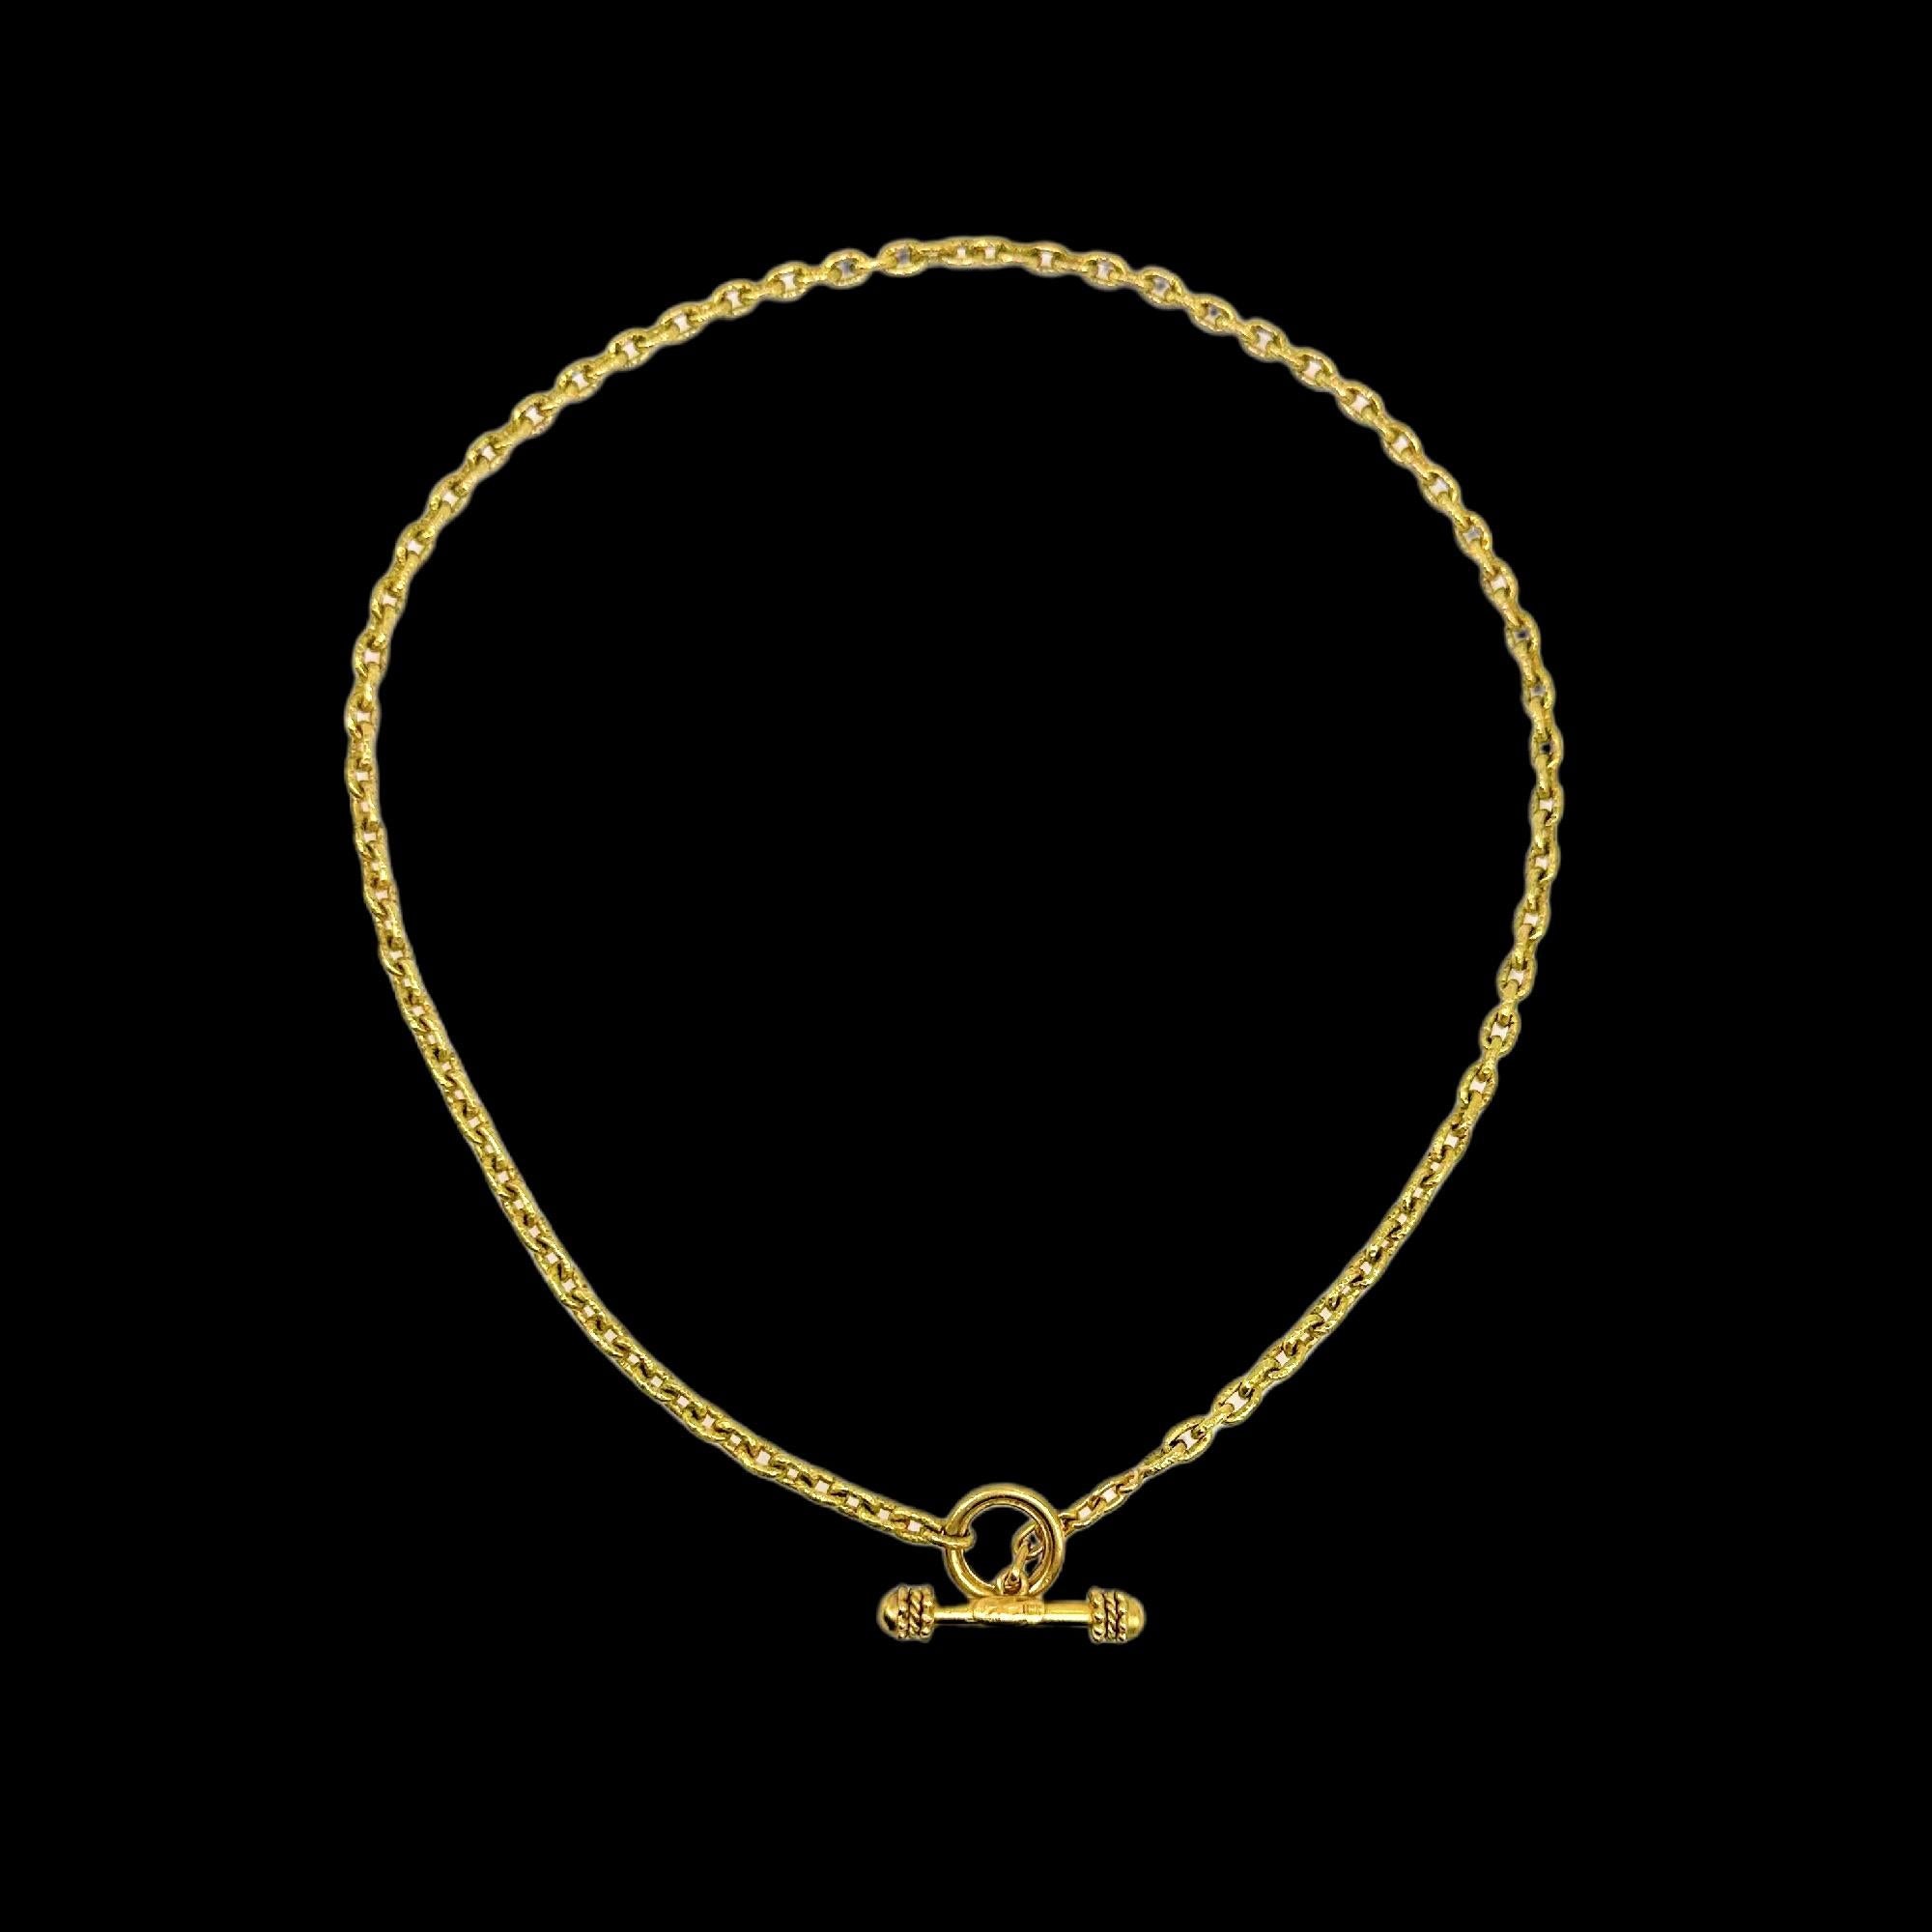 Elizabeth Locke Orvieta Hammered Gold Oval Link Necklace 19k Yg 5